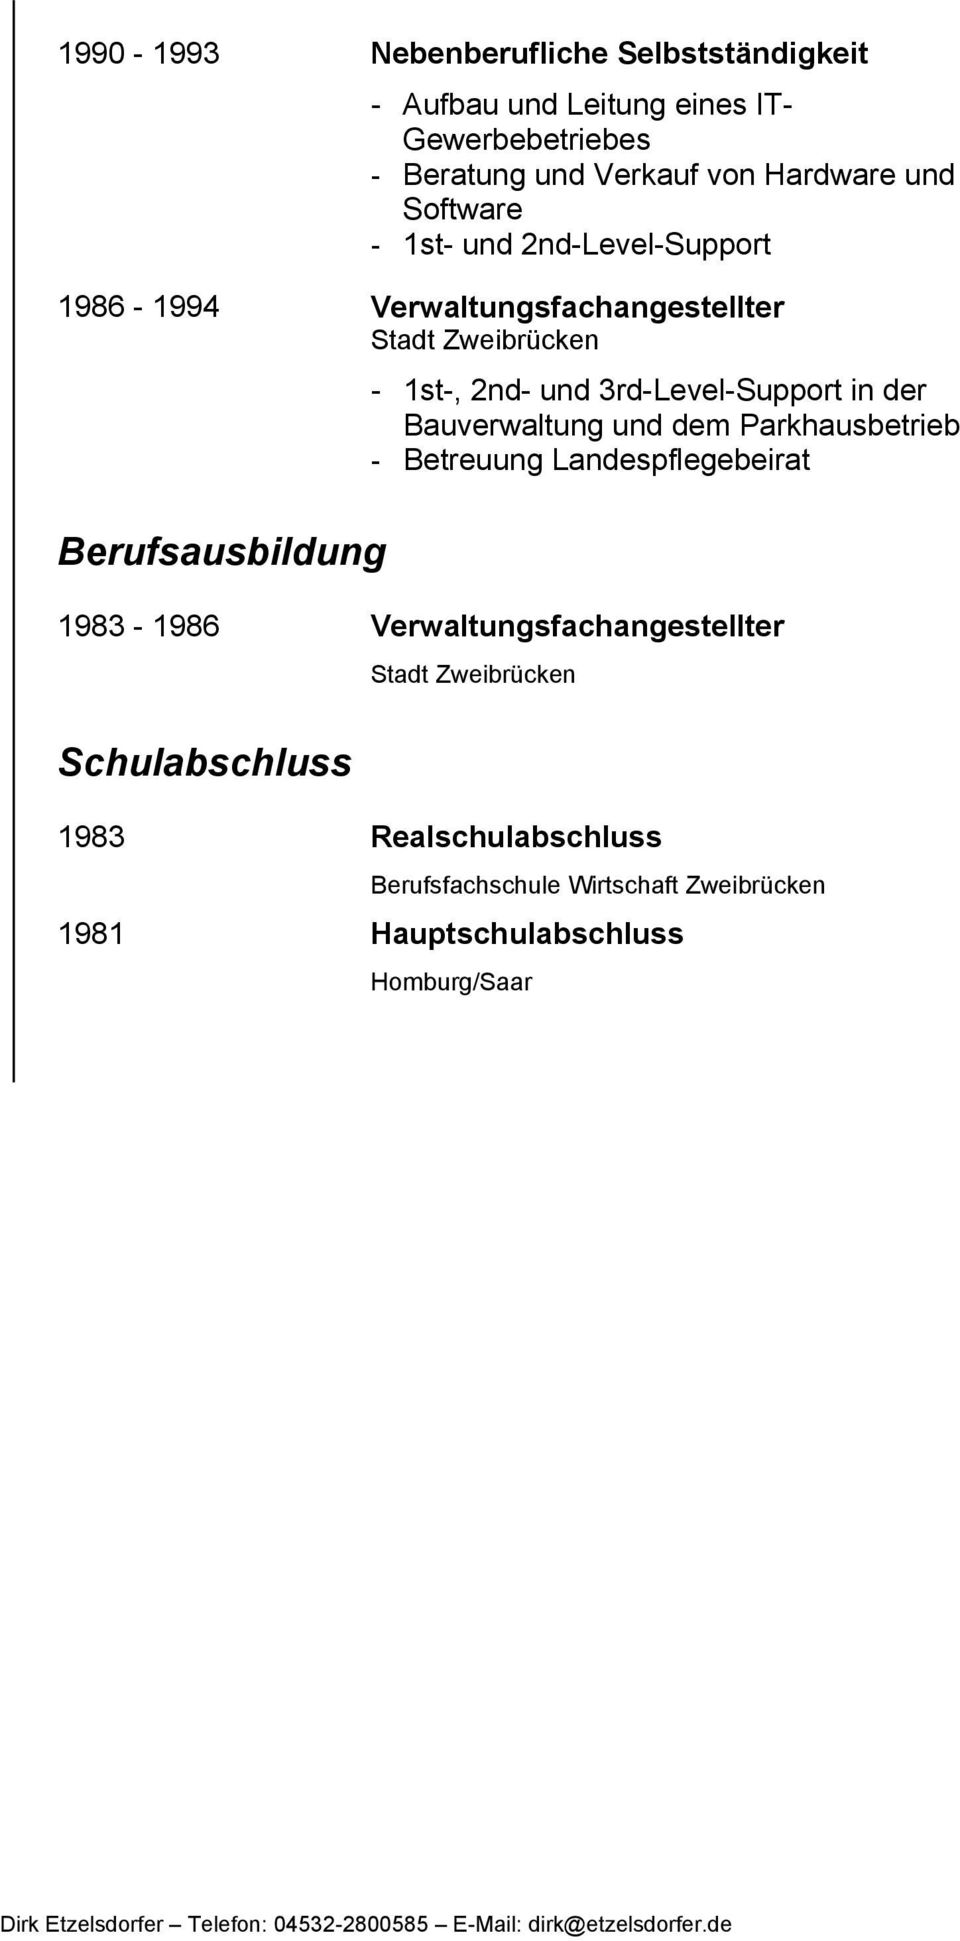 Parkhausbetrieb - Betreuung Landespflegebeirat Berufsausbildung 1983-1986 Verwaltungsfachangestellter tadt Zweibrücken chulabschluss 1983